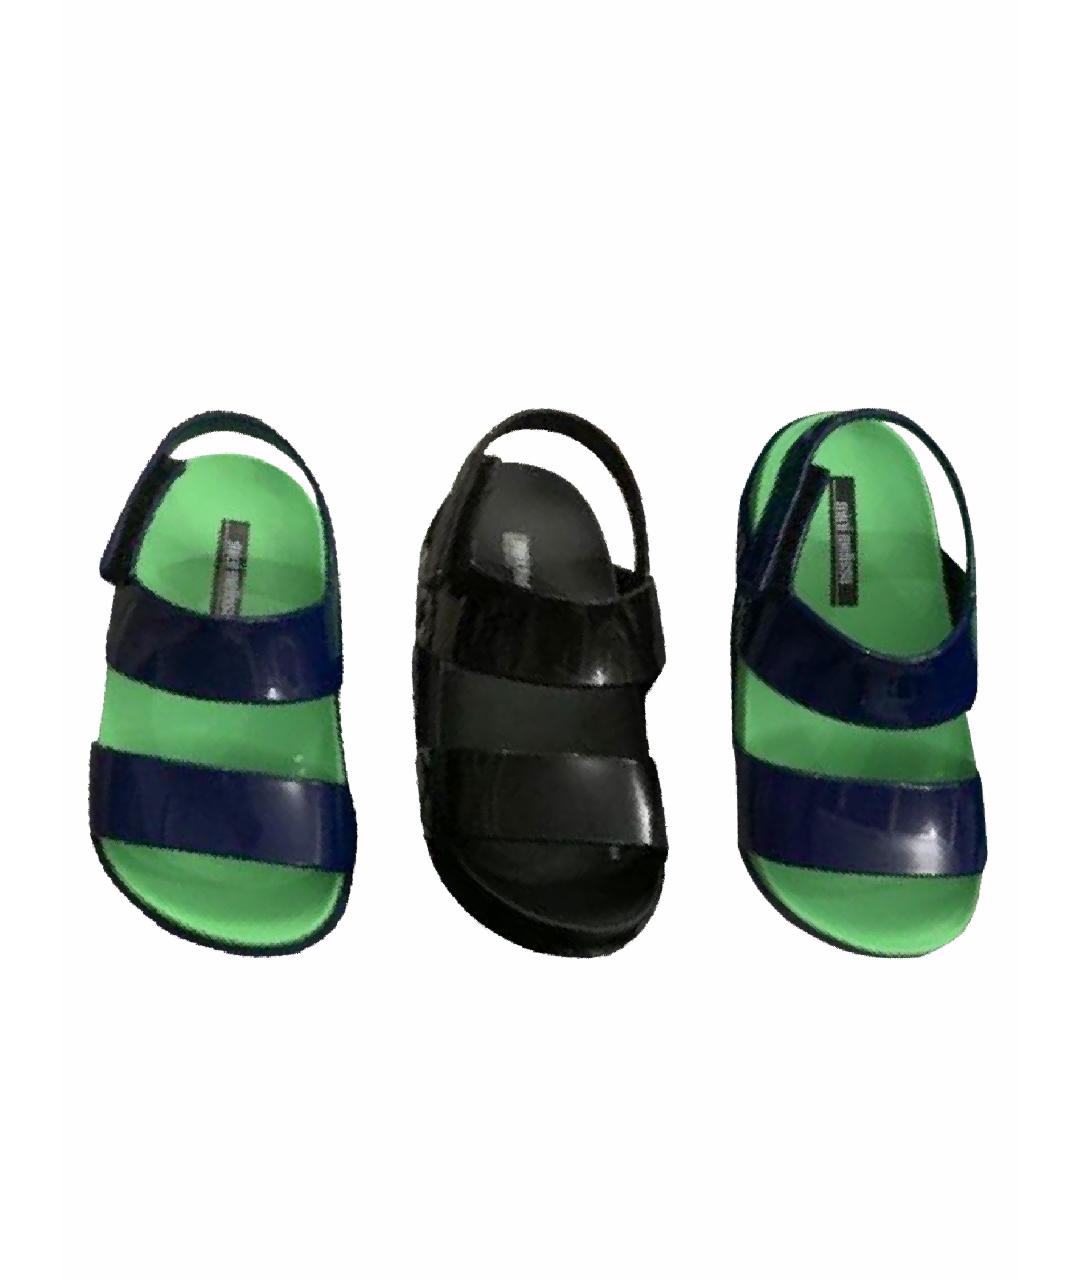 MINI MELISSA Синие резиновые сандалии и шлепанцы, фото 1